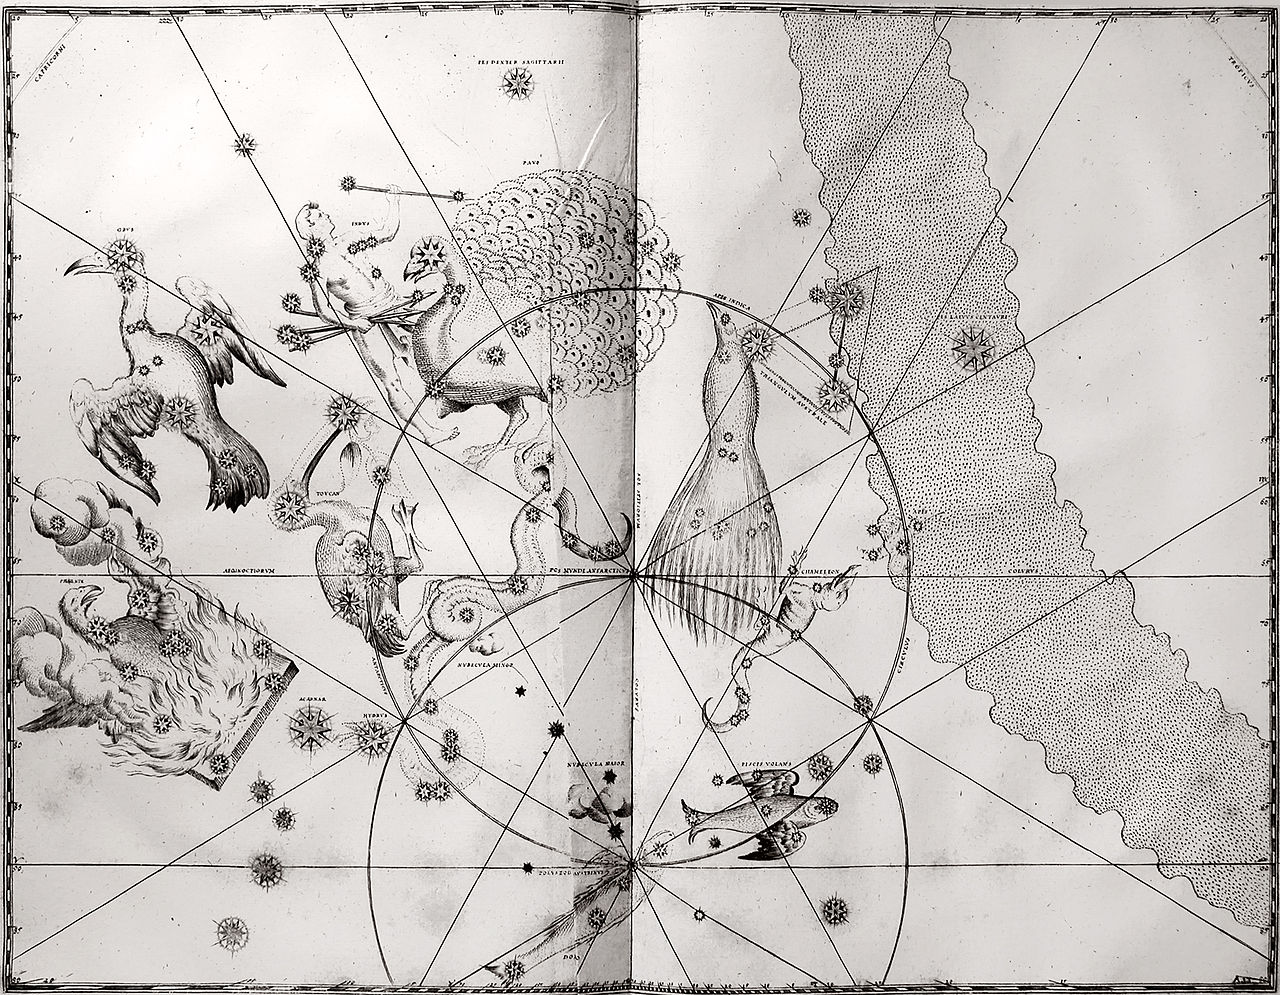 Carte du ciel boréal (hémisphère nord), La sphère céleste e…